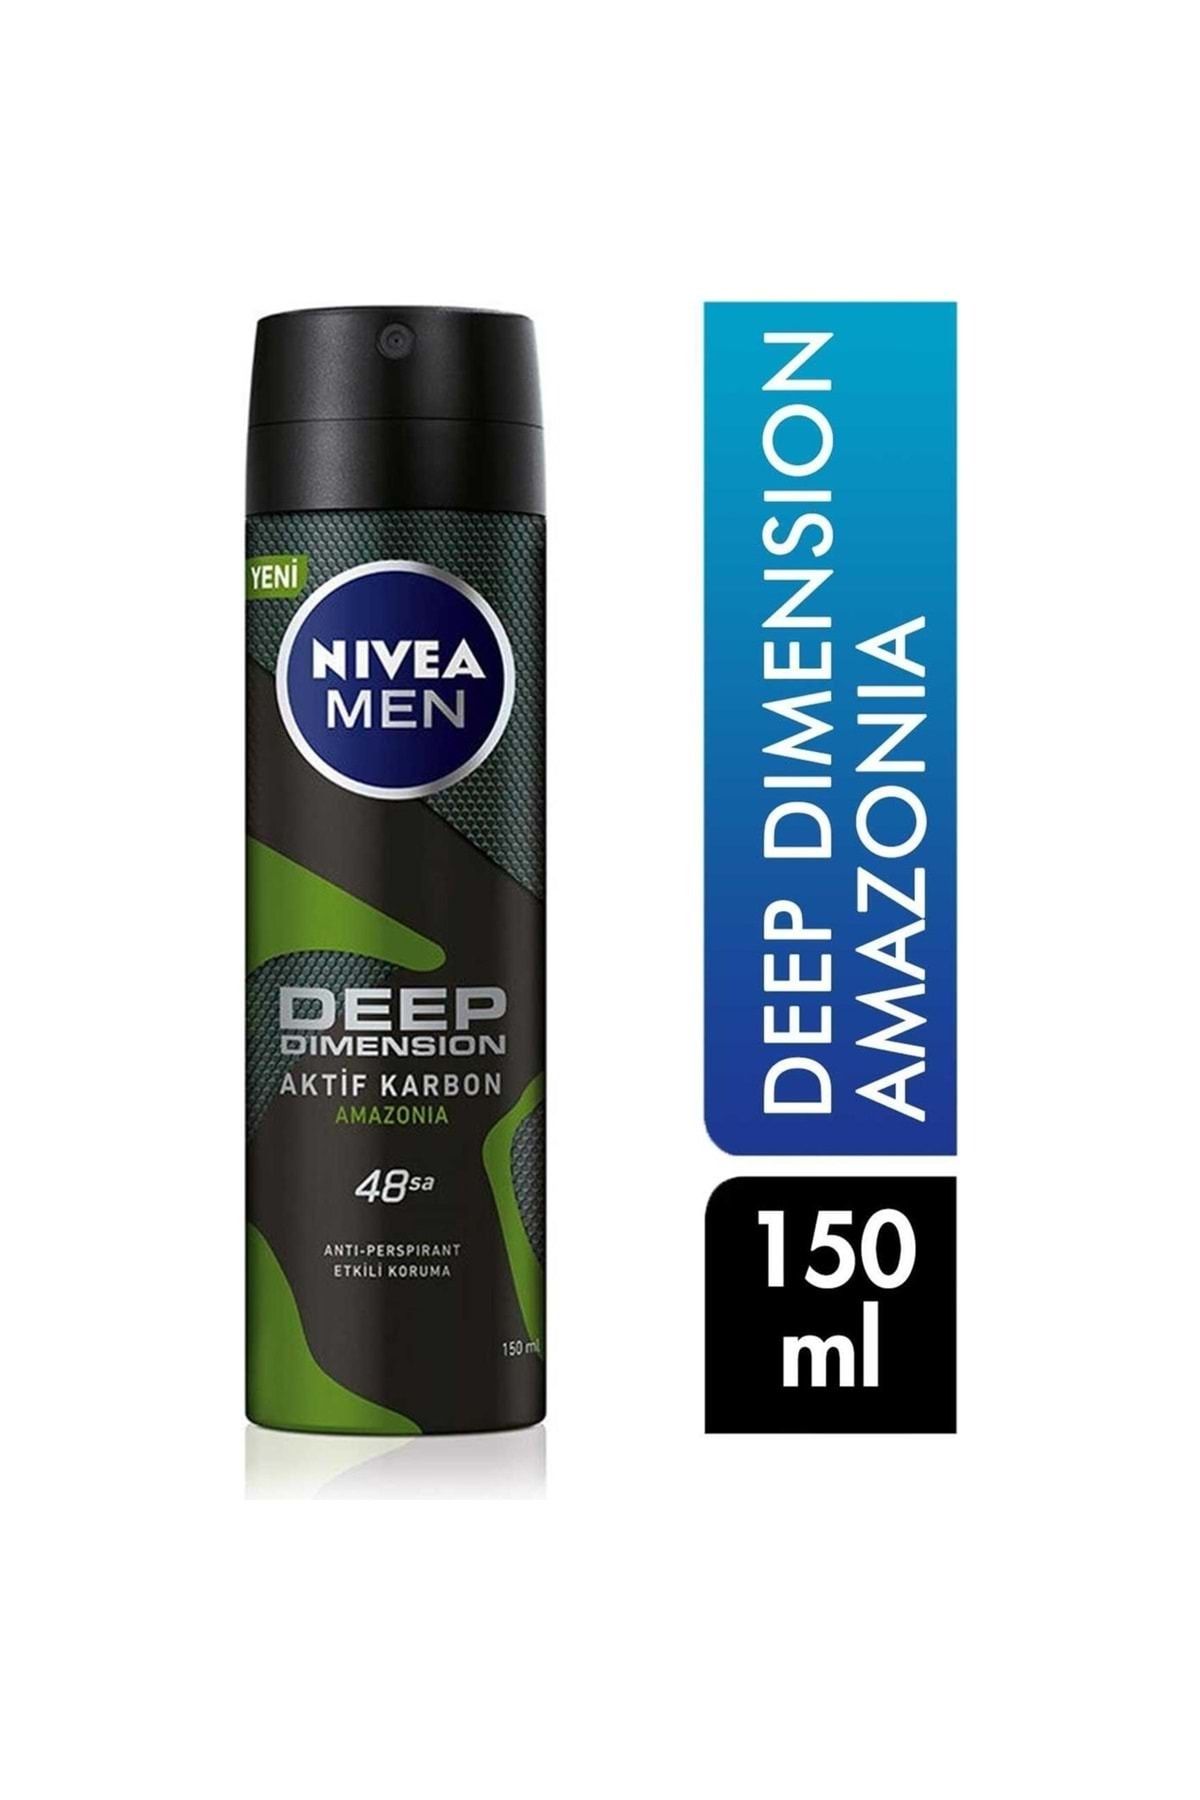 NIVEA Deodorant 150 ml Erkek Deep Dimension Amazonia